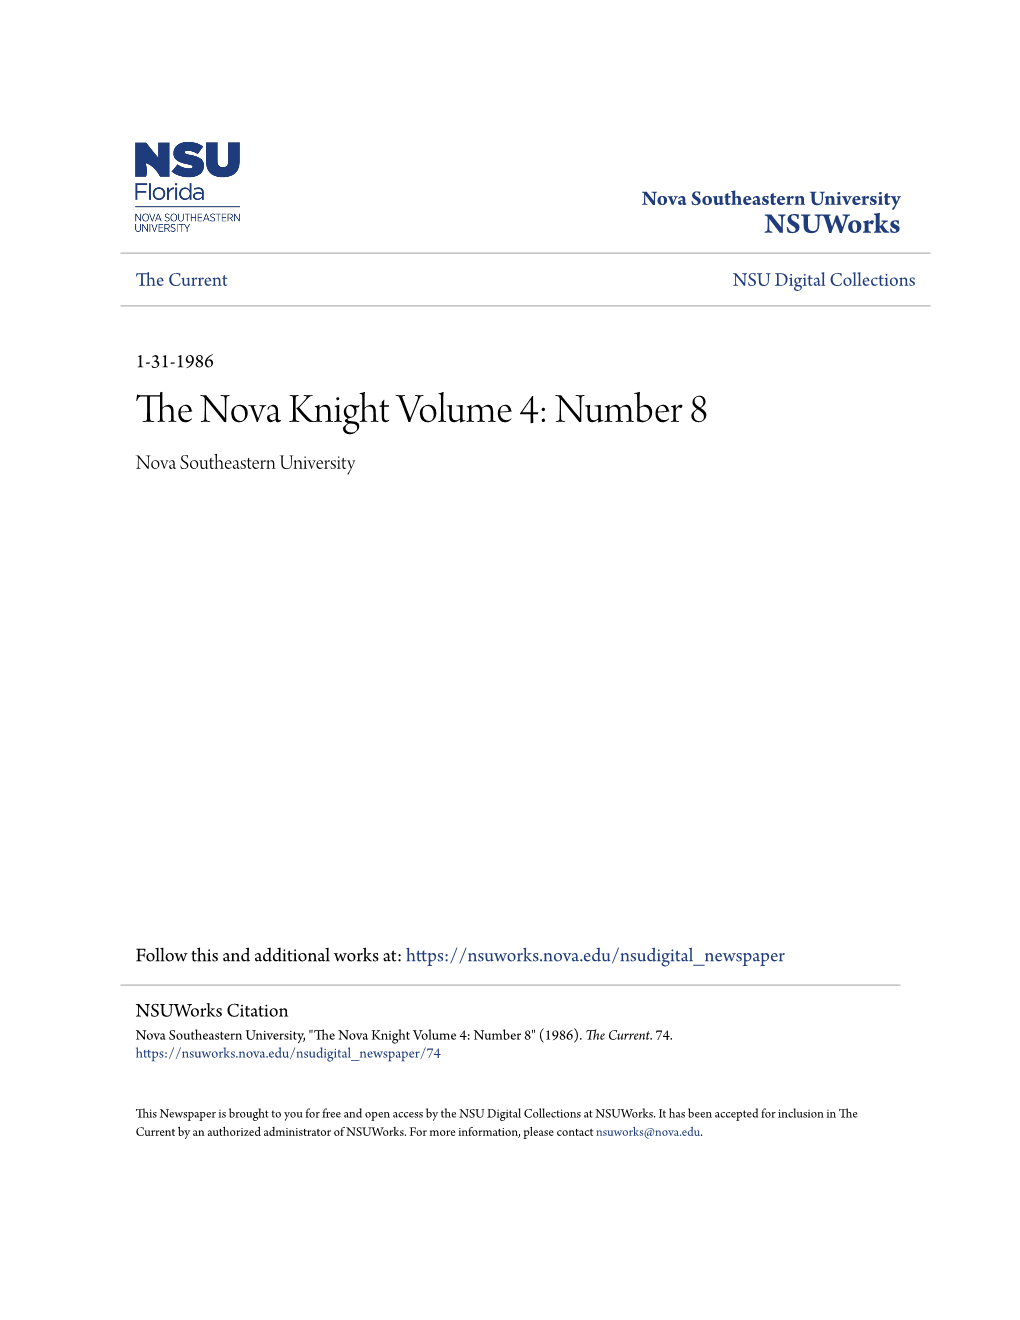 The Nova Knight Volume 4